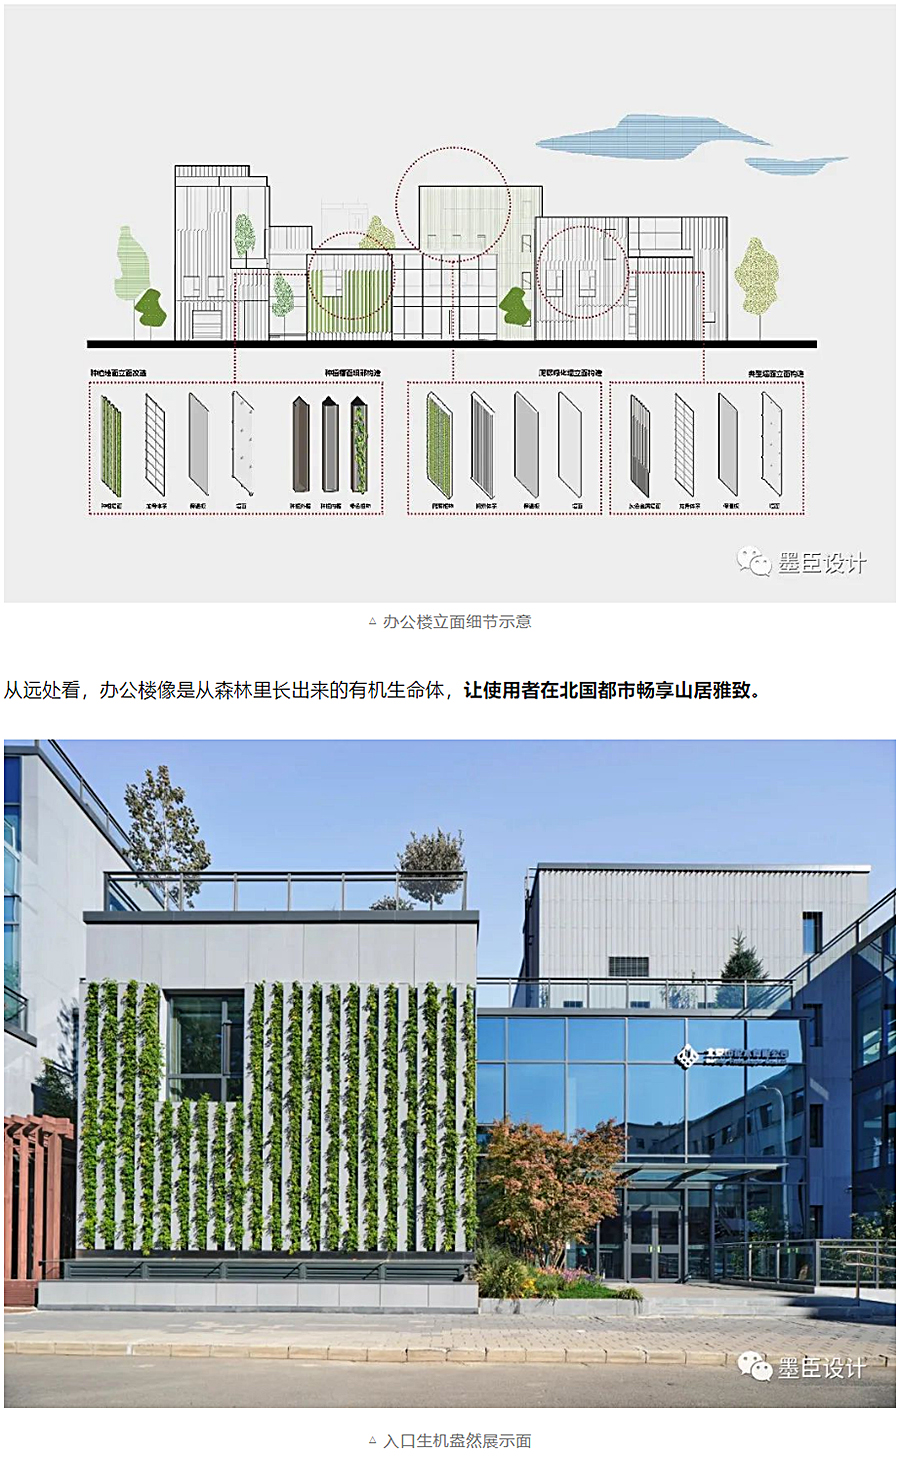 生态办公的游园序列-_-北京花木公司办公楼改造_0019_图层-20.jpg